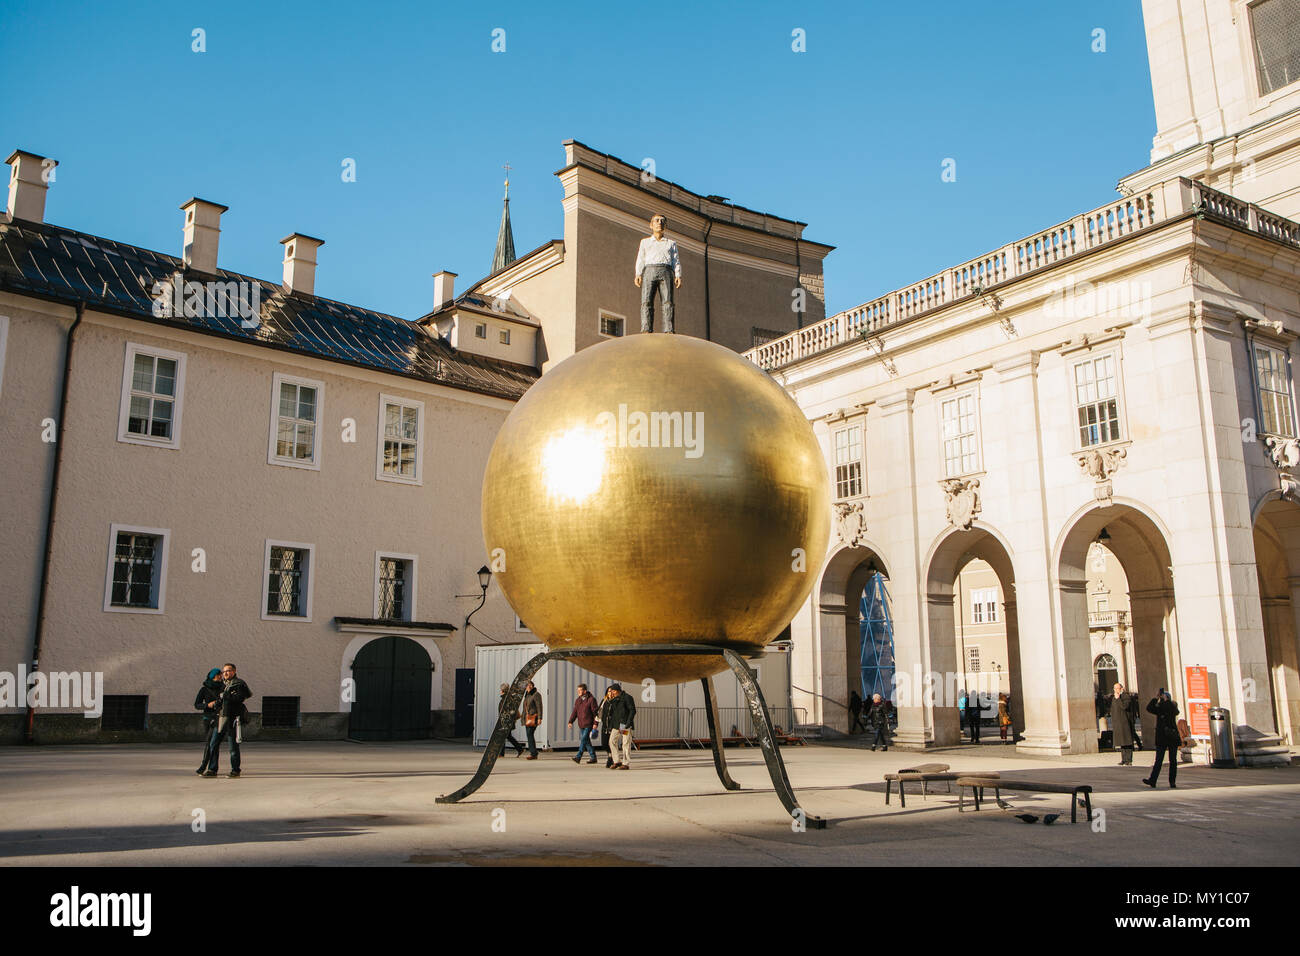 Austria, Salzburgo - 01. 01. 2017. Vista de la bola dorada estatua con hombre en traje formal en la parte superior coloca en la plaza de la ciudad en la luz del sol Foto de stock